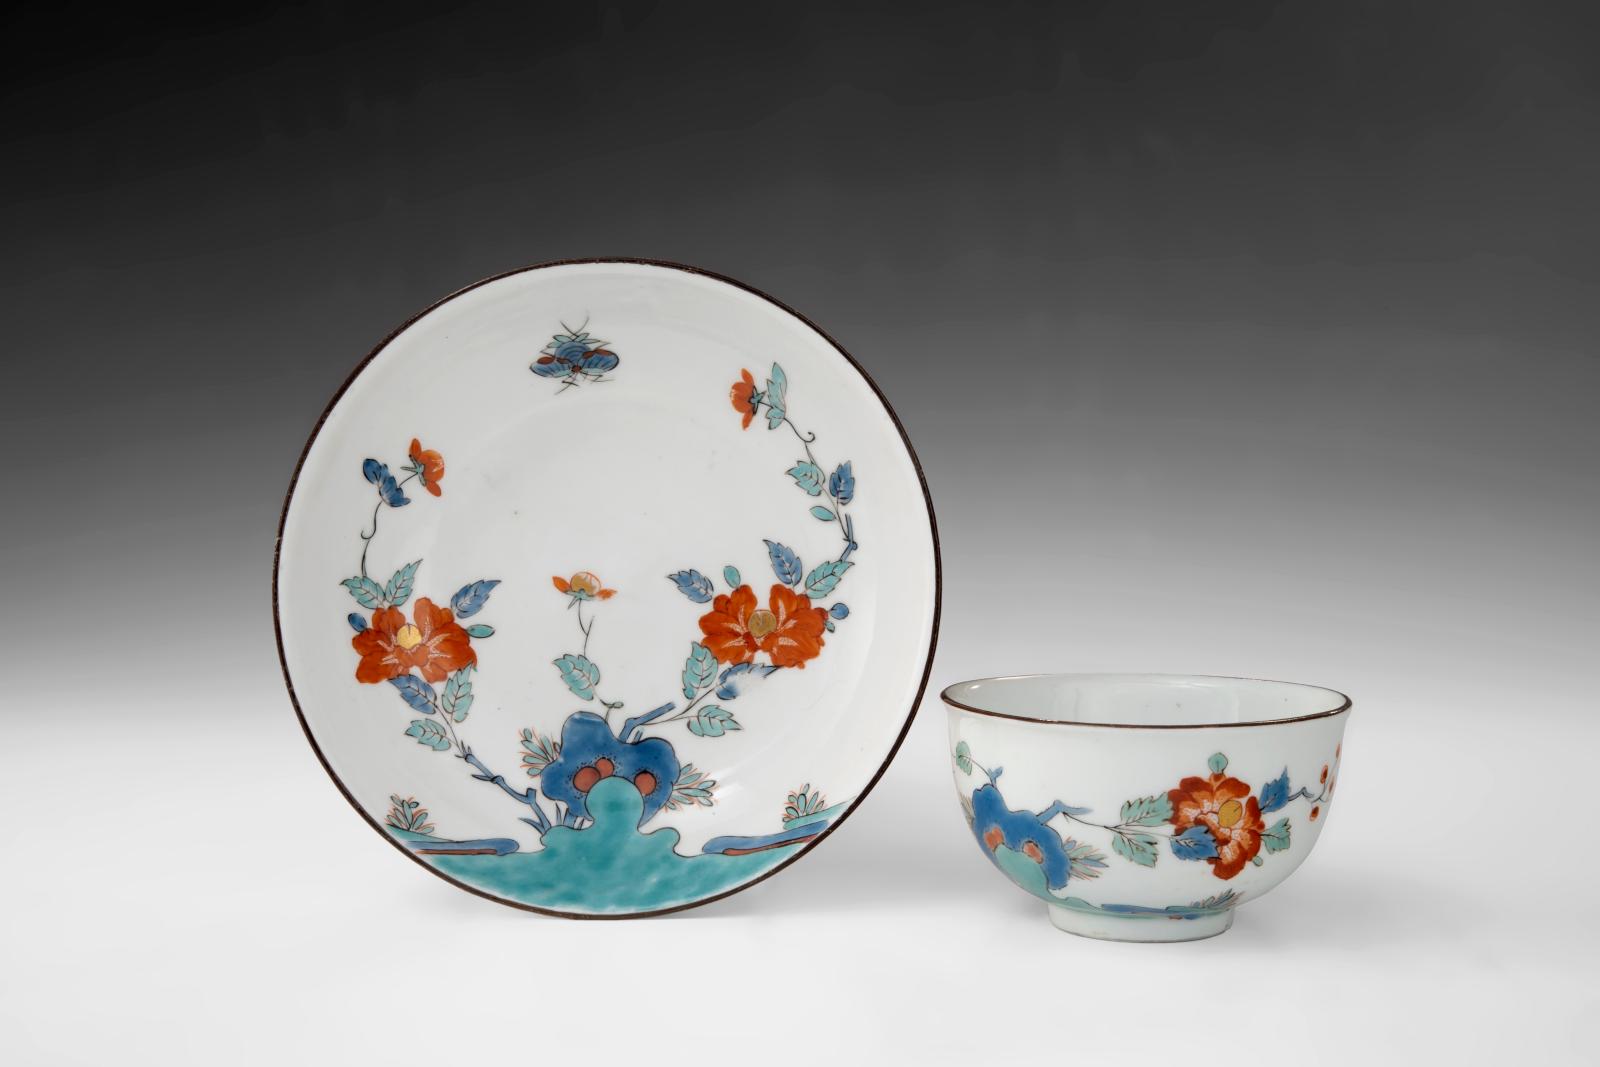 Meissen: A Passion for Porcelain